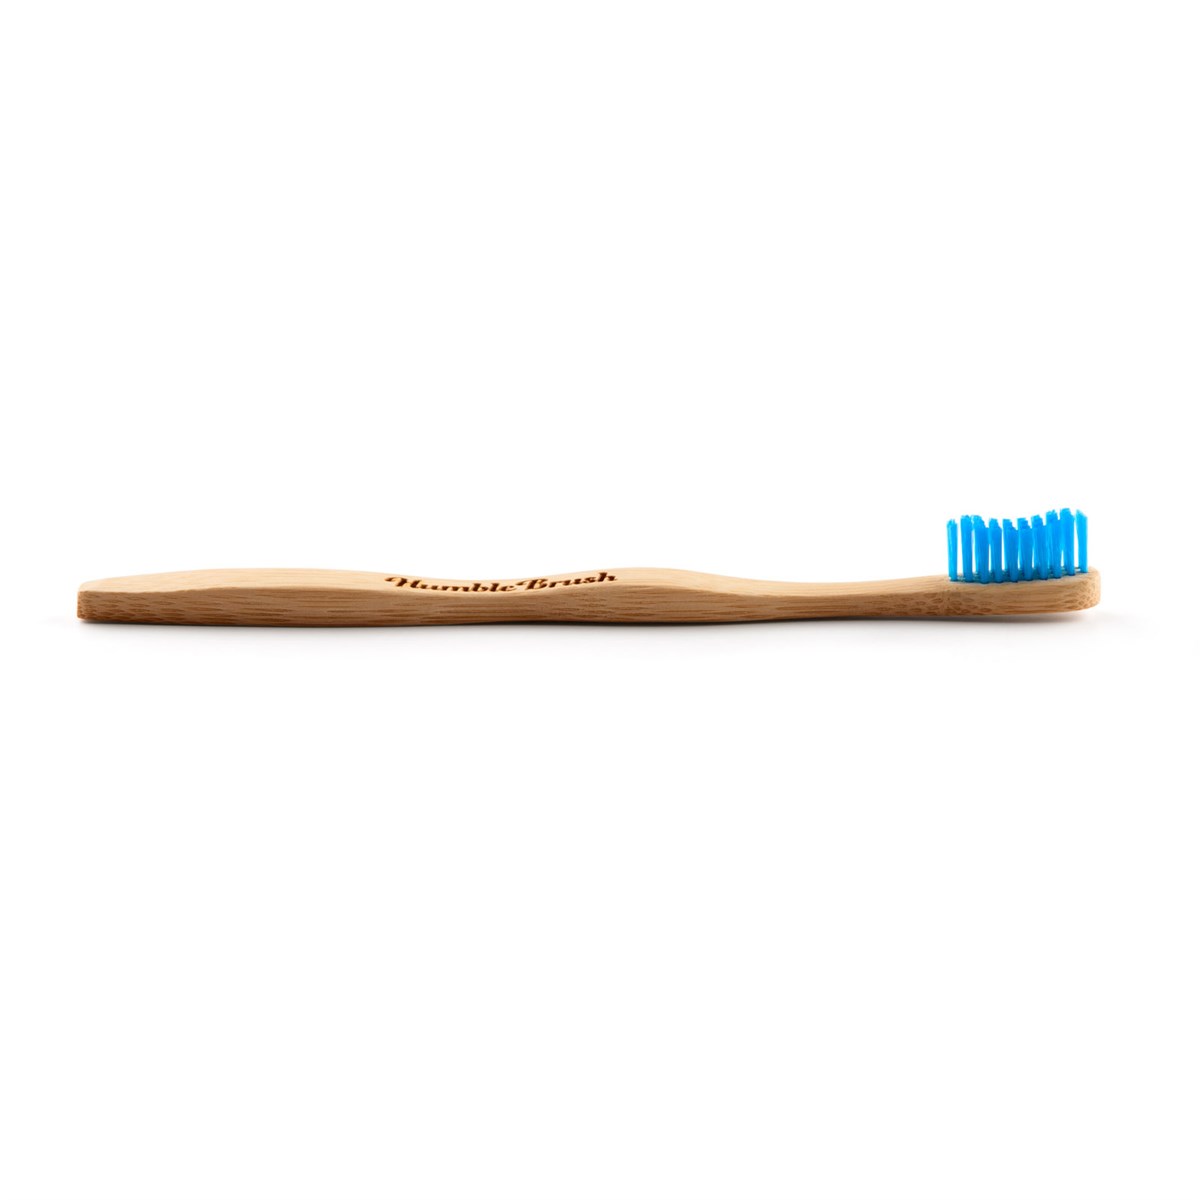 Yumuşak Diş Fırçası - Mavi | Vegan Bakkal